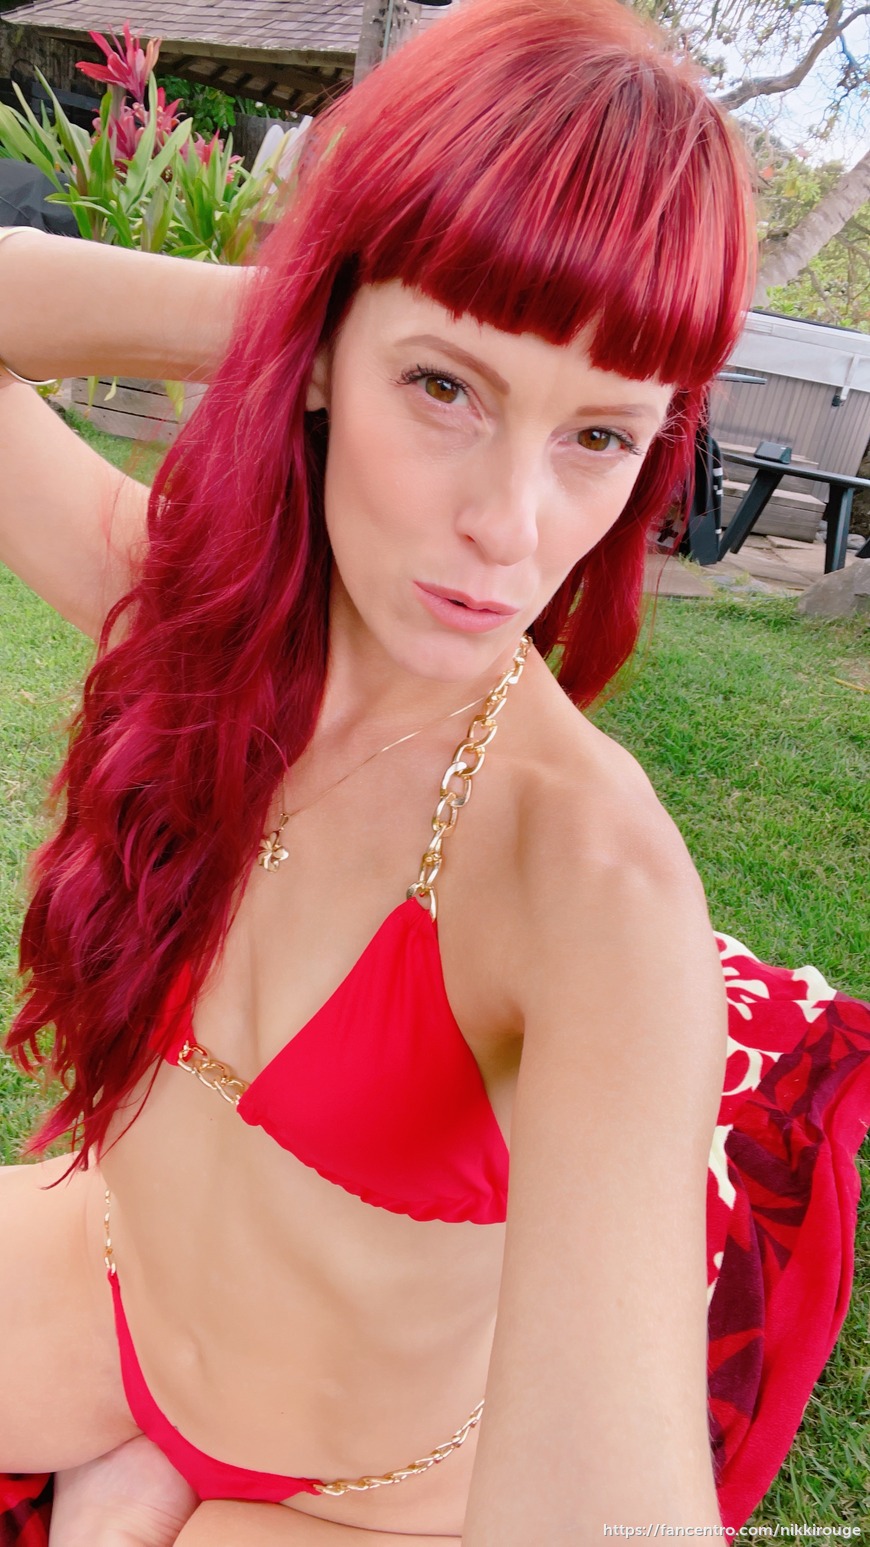 Red Bikini in Hawaii - post image 17